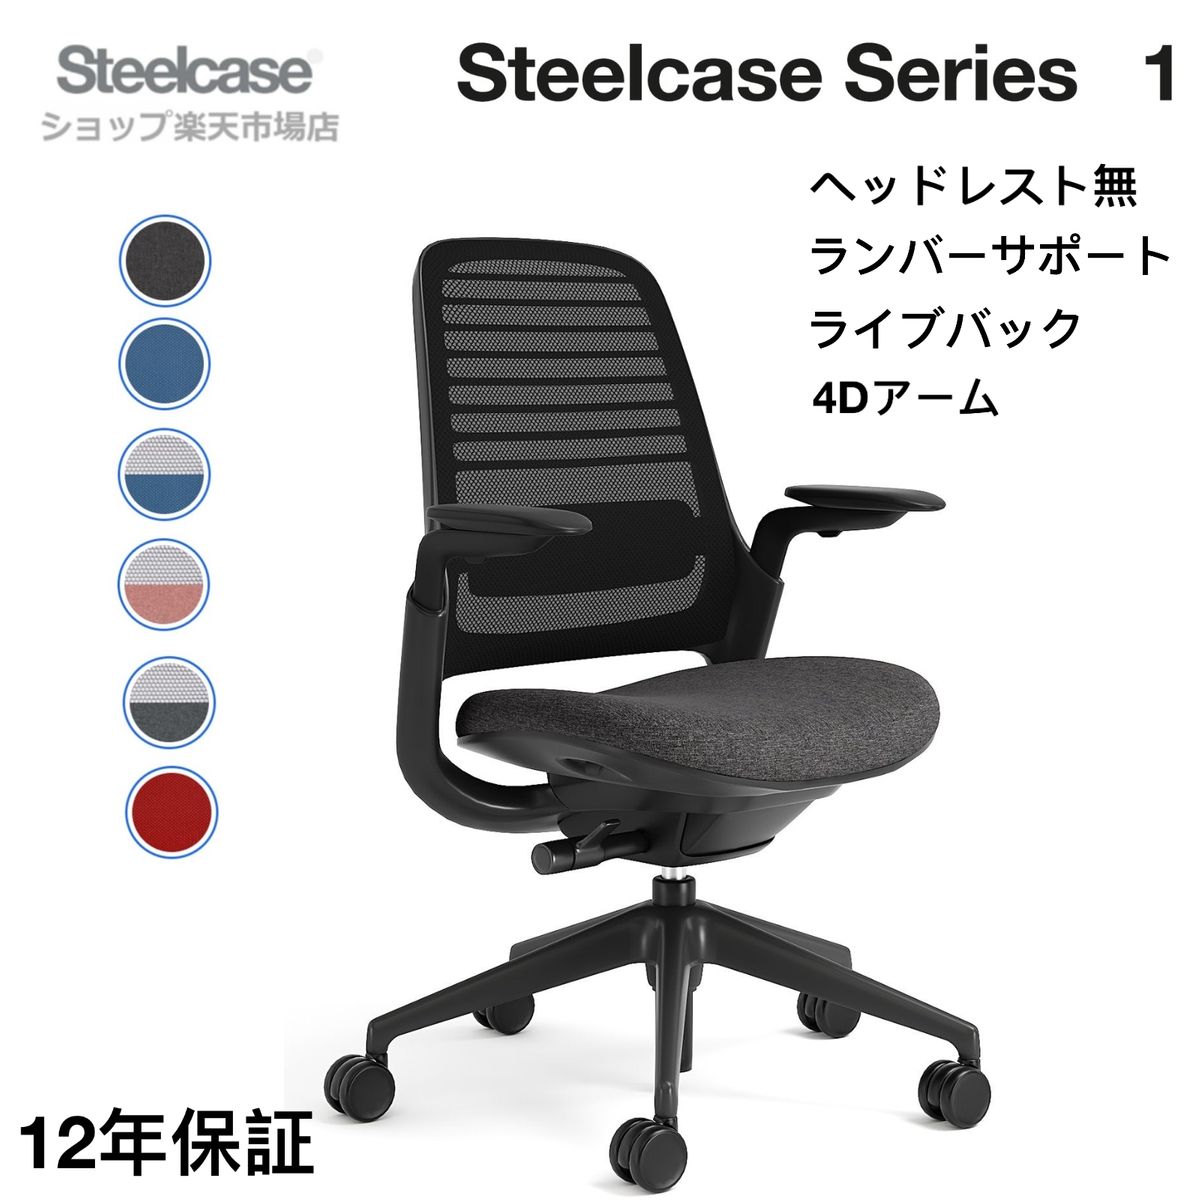 【楽天市場】Steelcase Series 1 ヘッドレスト付 スチールケース 